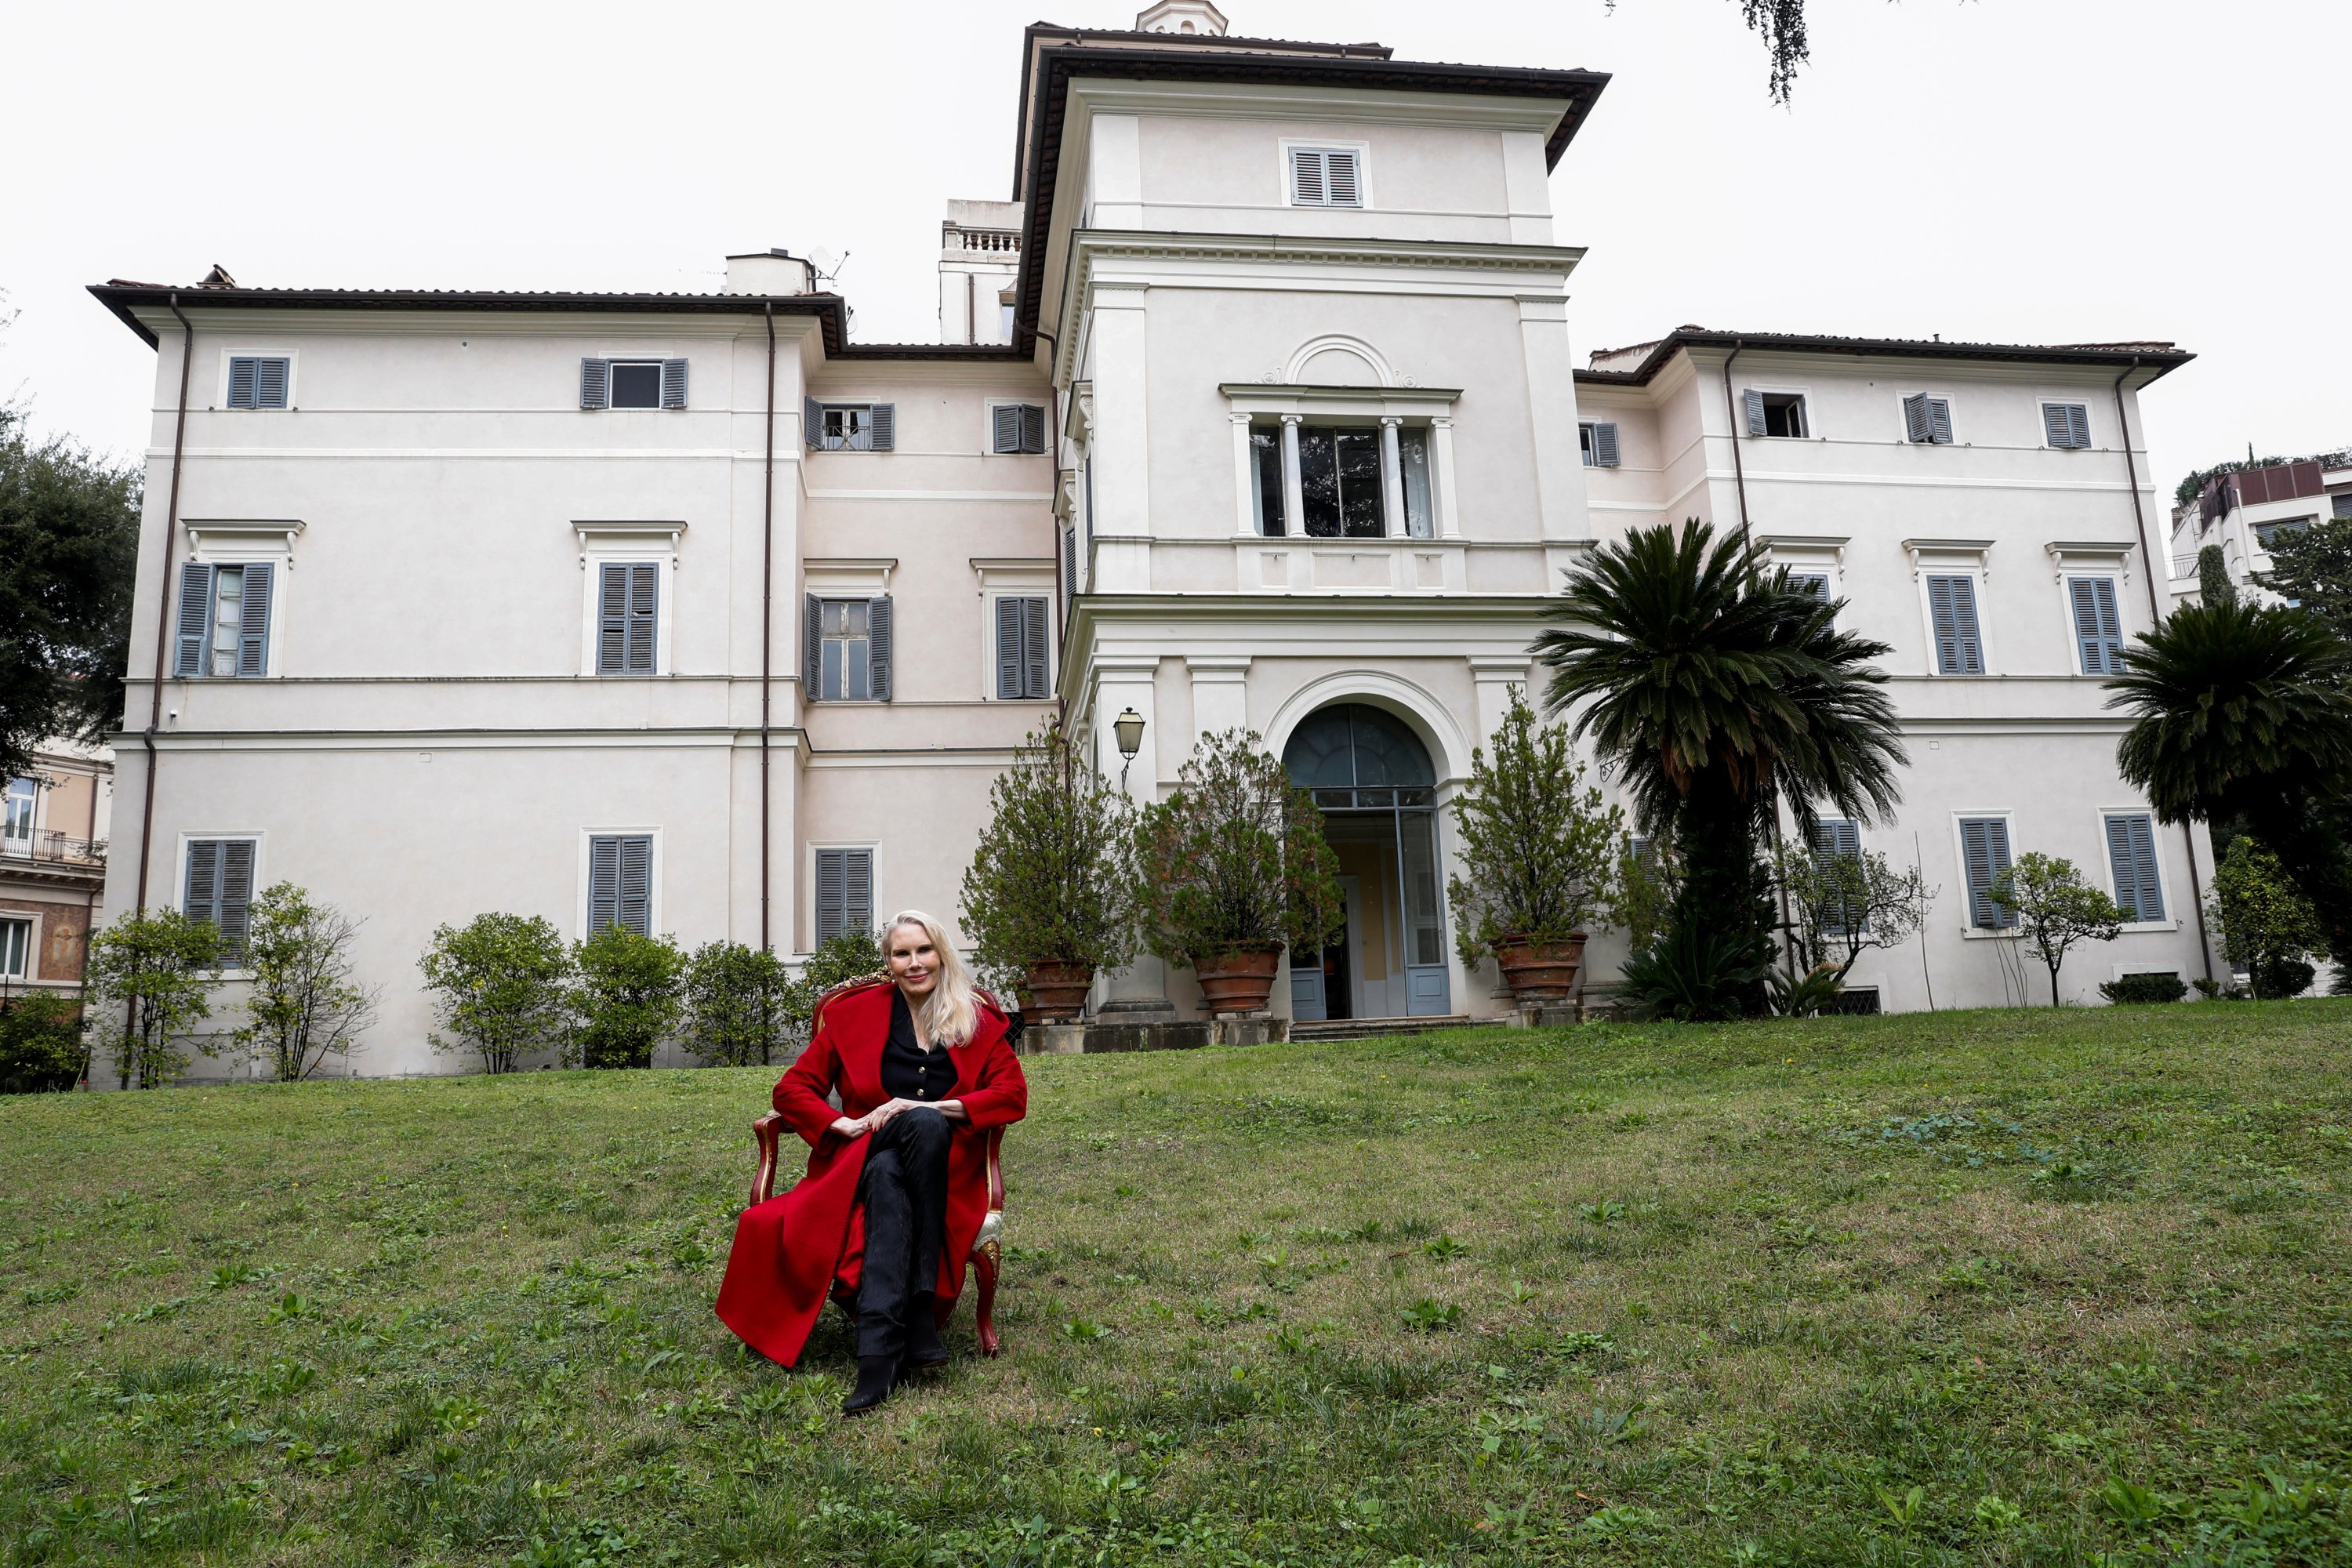 Princess Rita Boncompagni Ludovisi poses for a photograph outside Villa Aurora, in Rome, Italy, Nov. 16, 2021. (REUTERS)